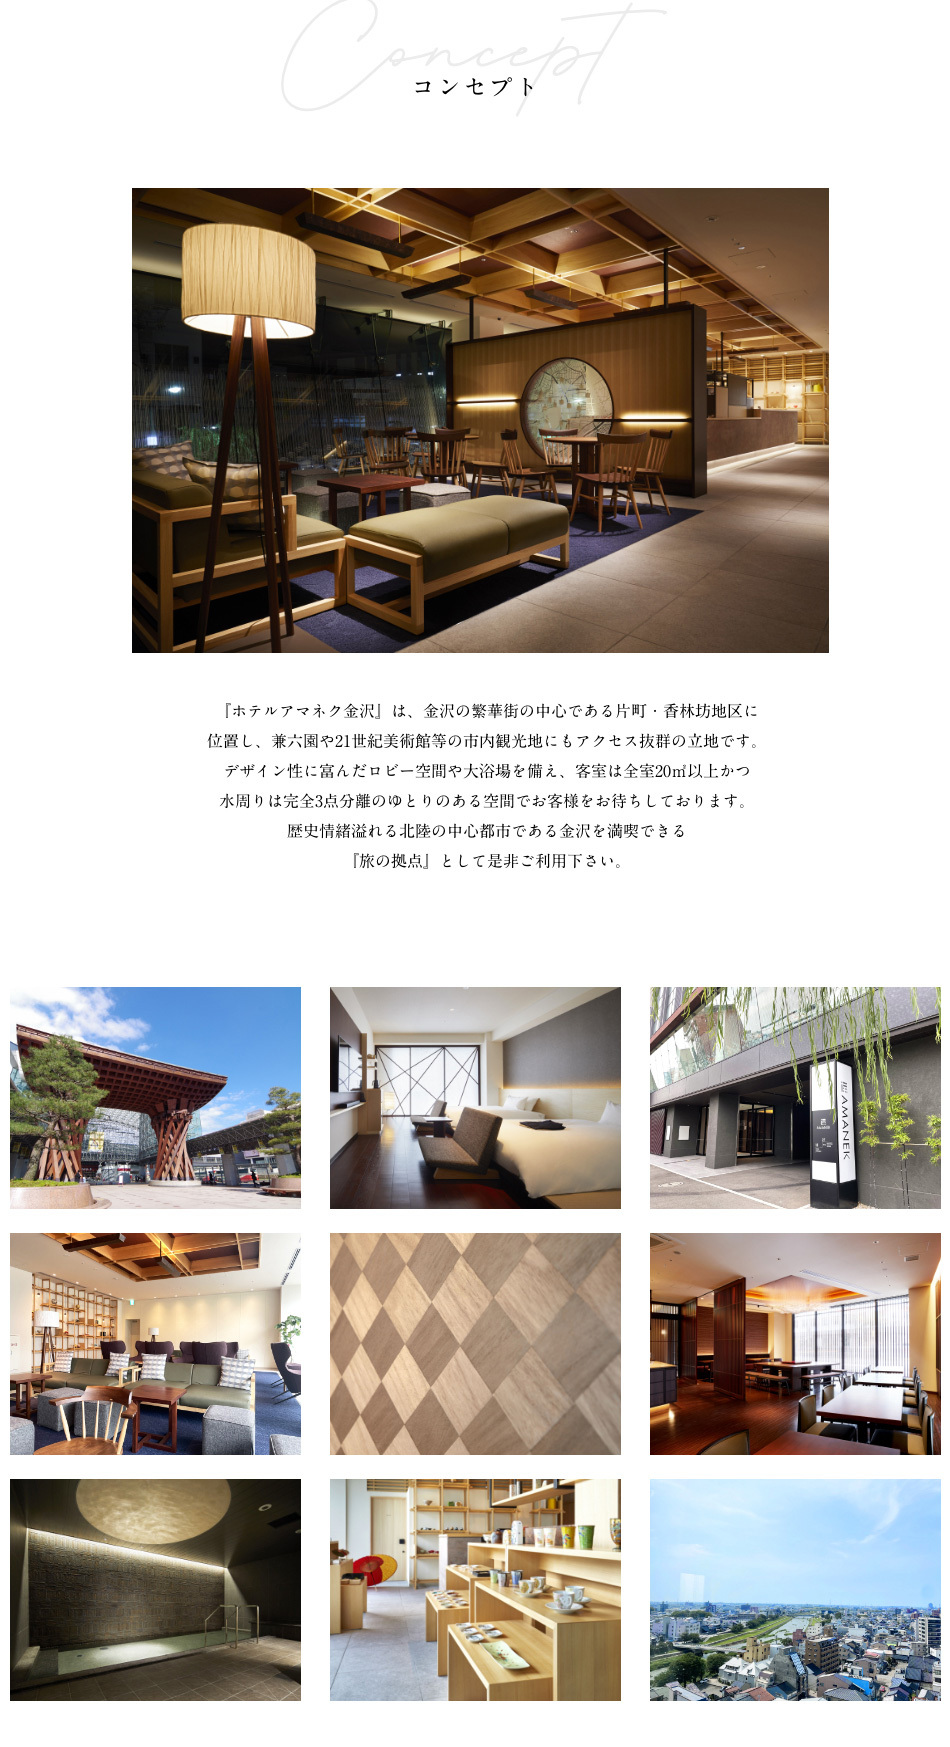 コンセプト 『ホテルアマネク金沢』は、金沢の繁華街の中心である片町・香林坊地区に位置し、兼六園や21世紀美術館等の市内観光地にもアクセス抜群の立地です。デザイン性に富んだロビー空間や大浴場を備え、客室は全室20㎡以上かつ水周りは完全3点分離のゆとりのある空間でお客様をお待ちしております。歴史情緒溢れる北陸の中心都市である金沢を満喫できる『旅の拠点』として是非ご利用下さい。